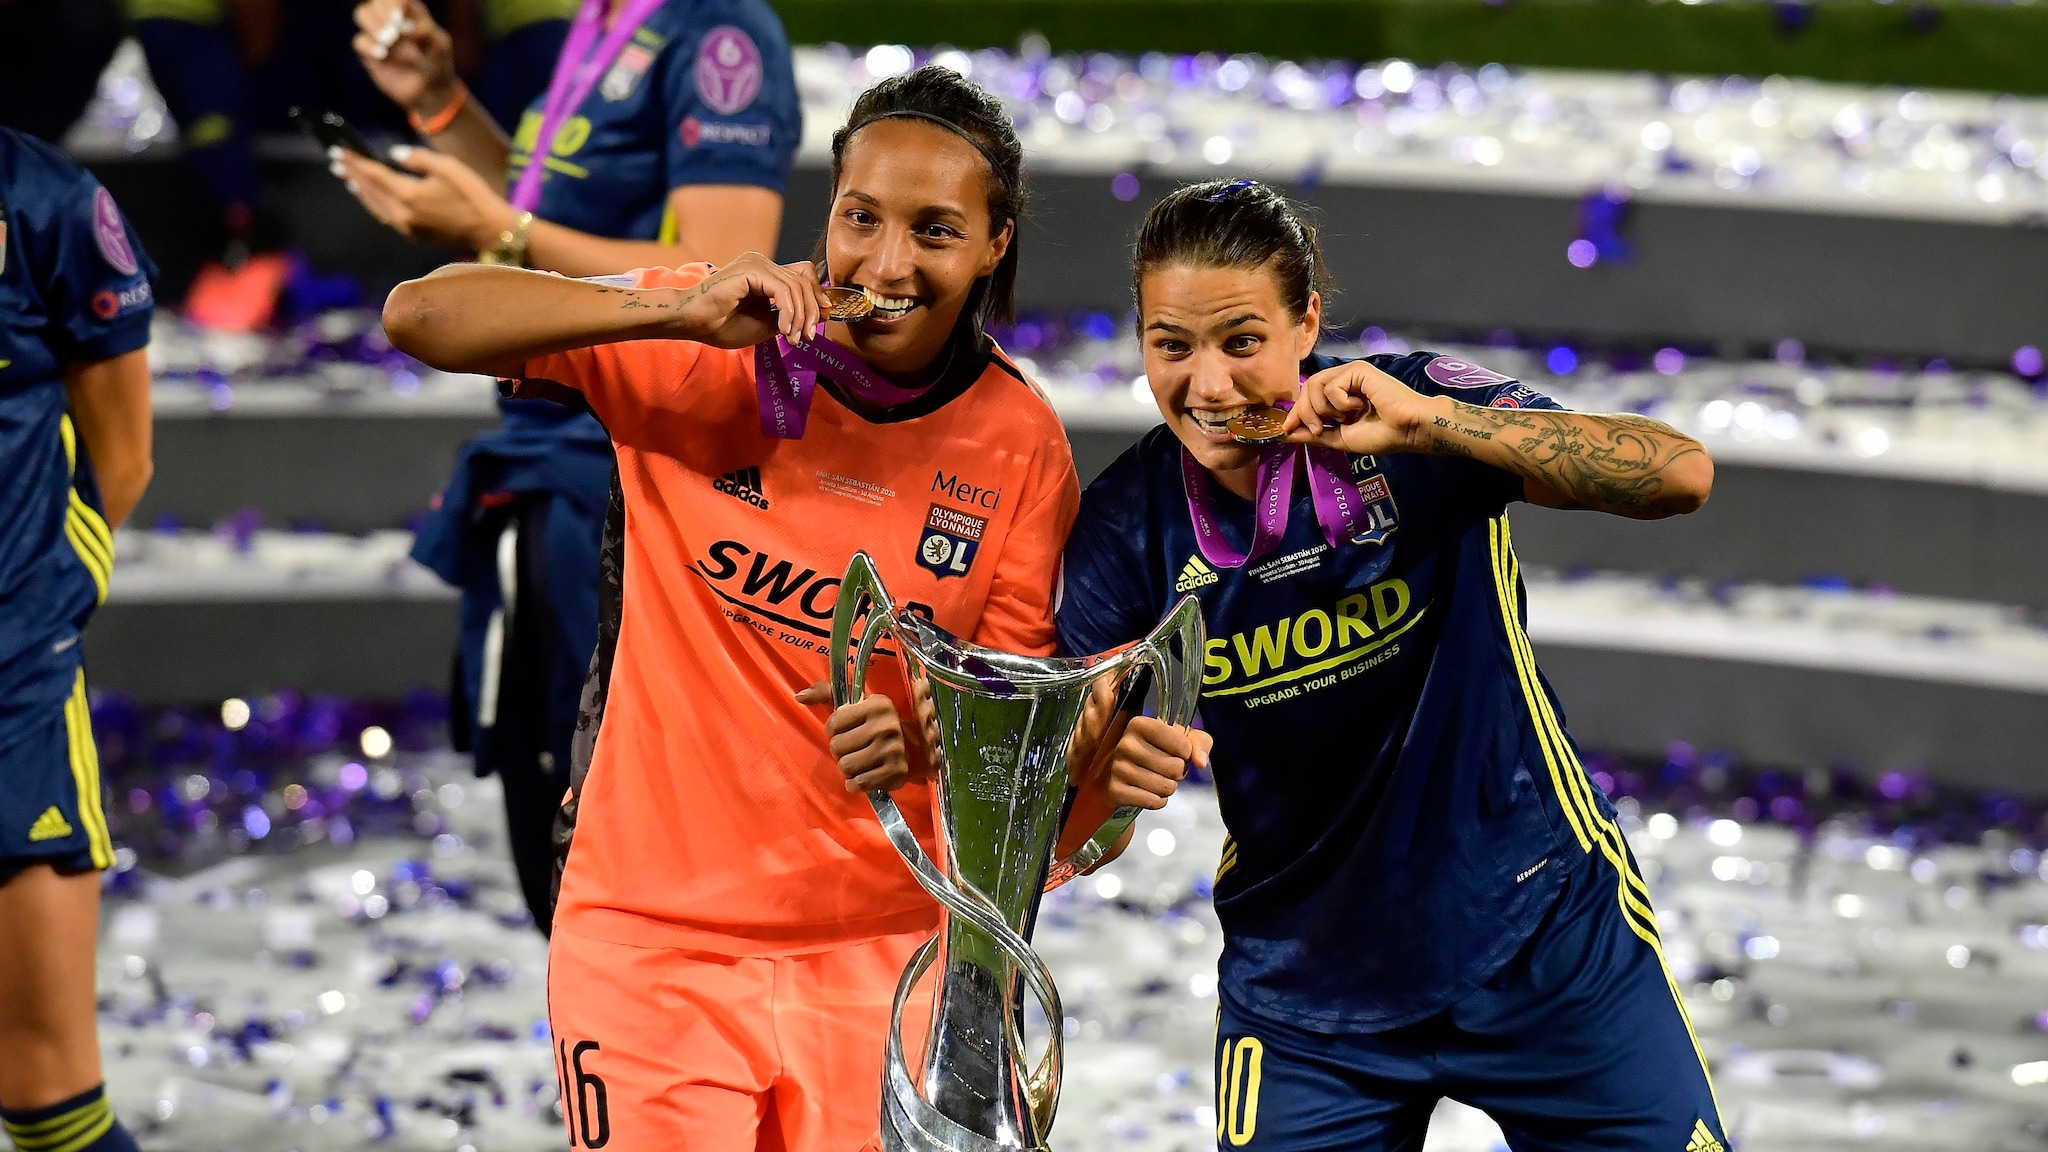 Champions League féminine, le groupe de la saison 2019/20